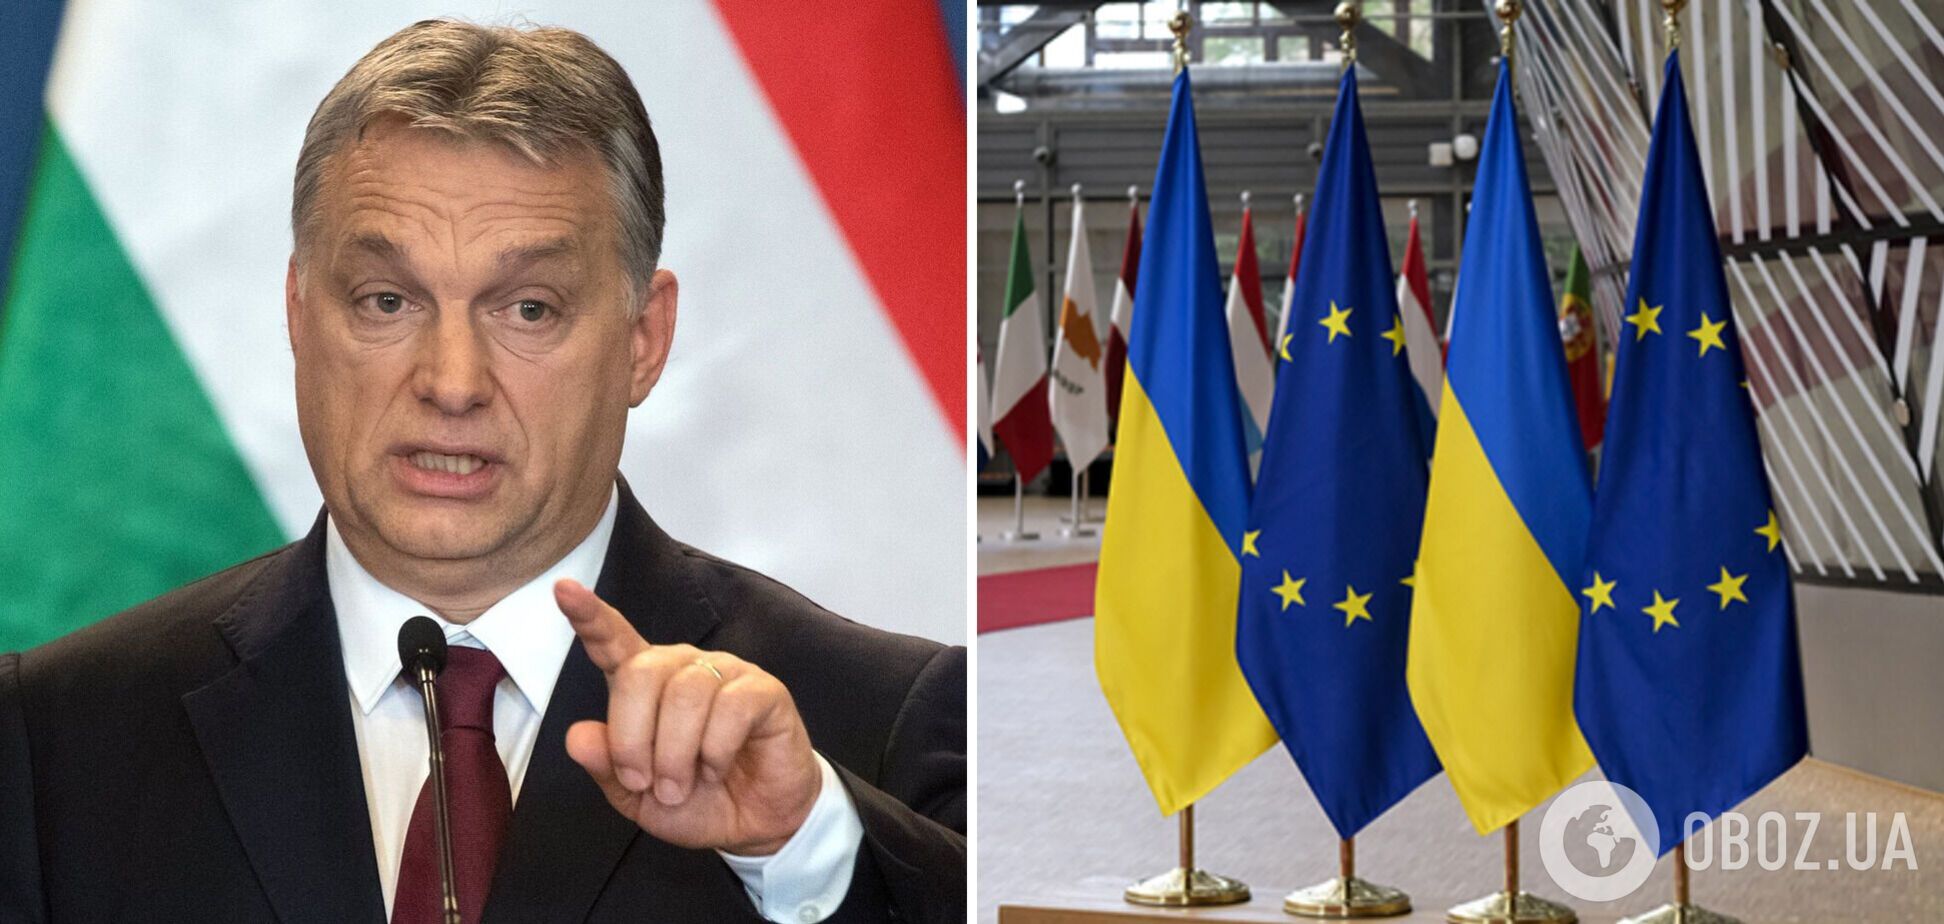 Еврокомиссия намерена разморозить выделение для Венгрии около 13 млрд евро